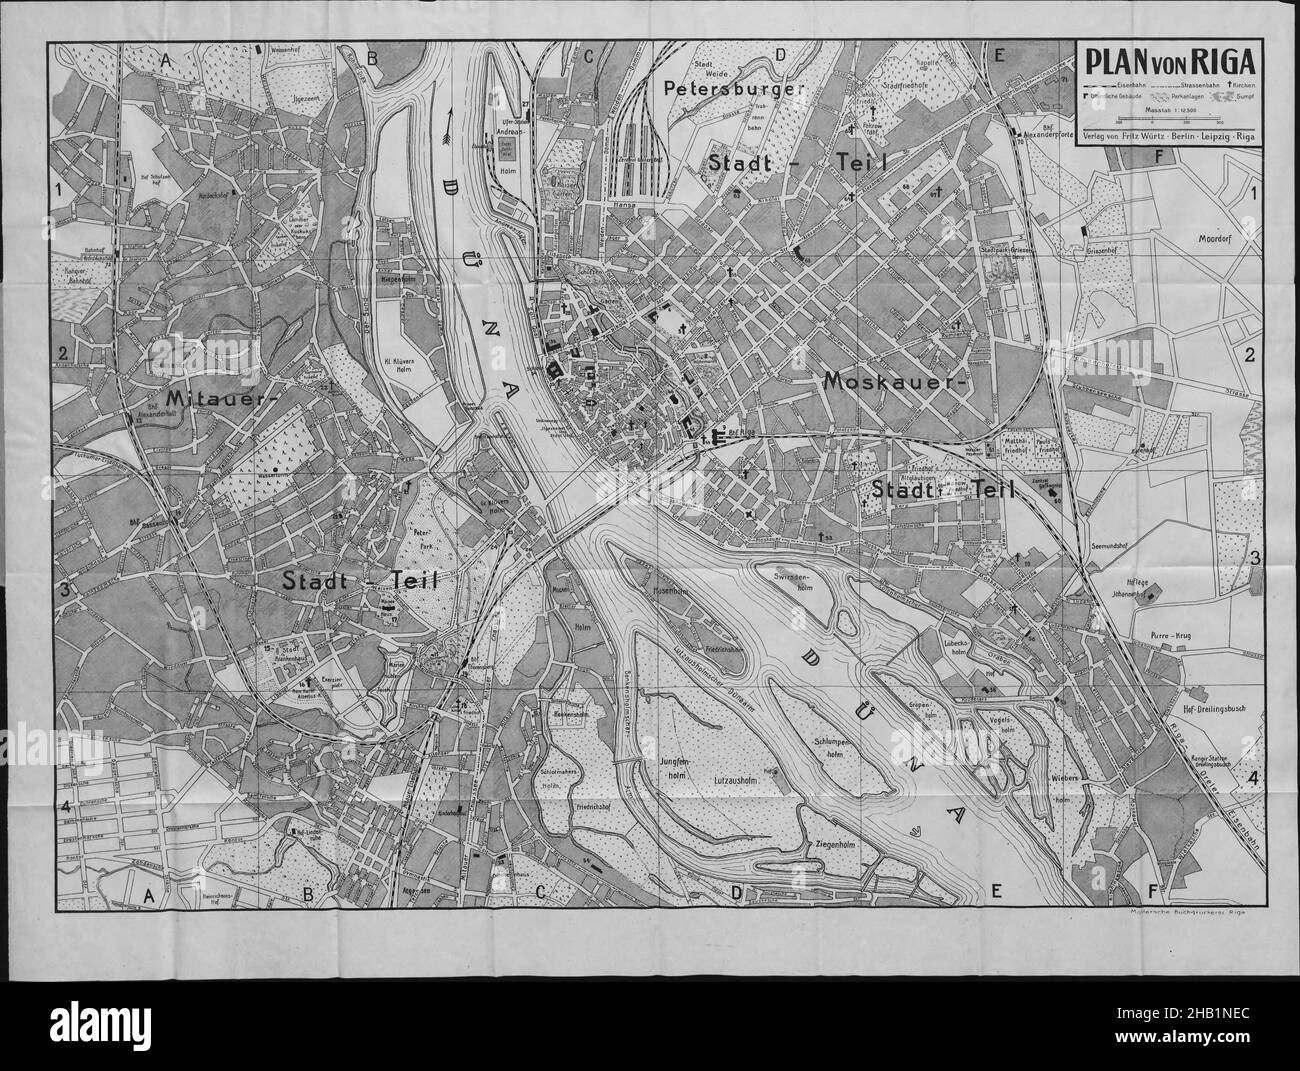 Riga Map, Old Riga Map, Old Riga City, Retro Riga Map, Vintage Riga Plan, Old Riga Print, Vintage Riga Map, Vintage Riga Plan, Old Riga Poster, Riga Stock Photo